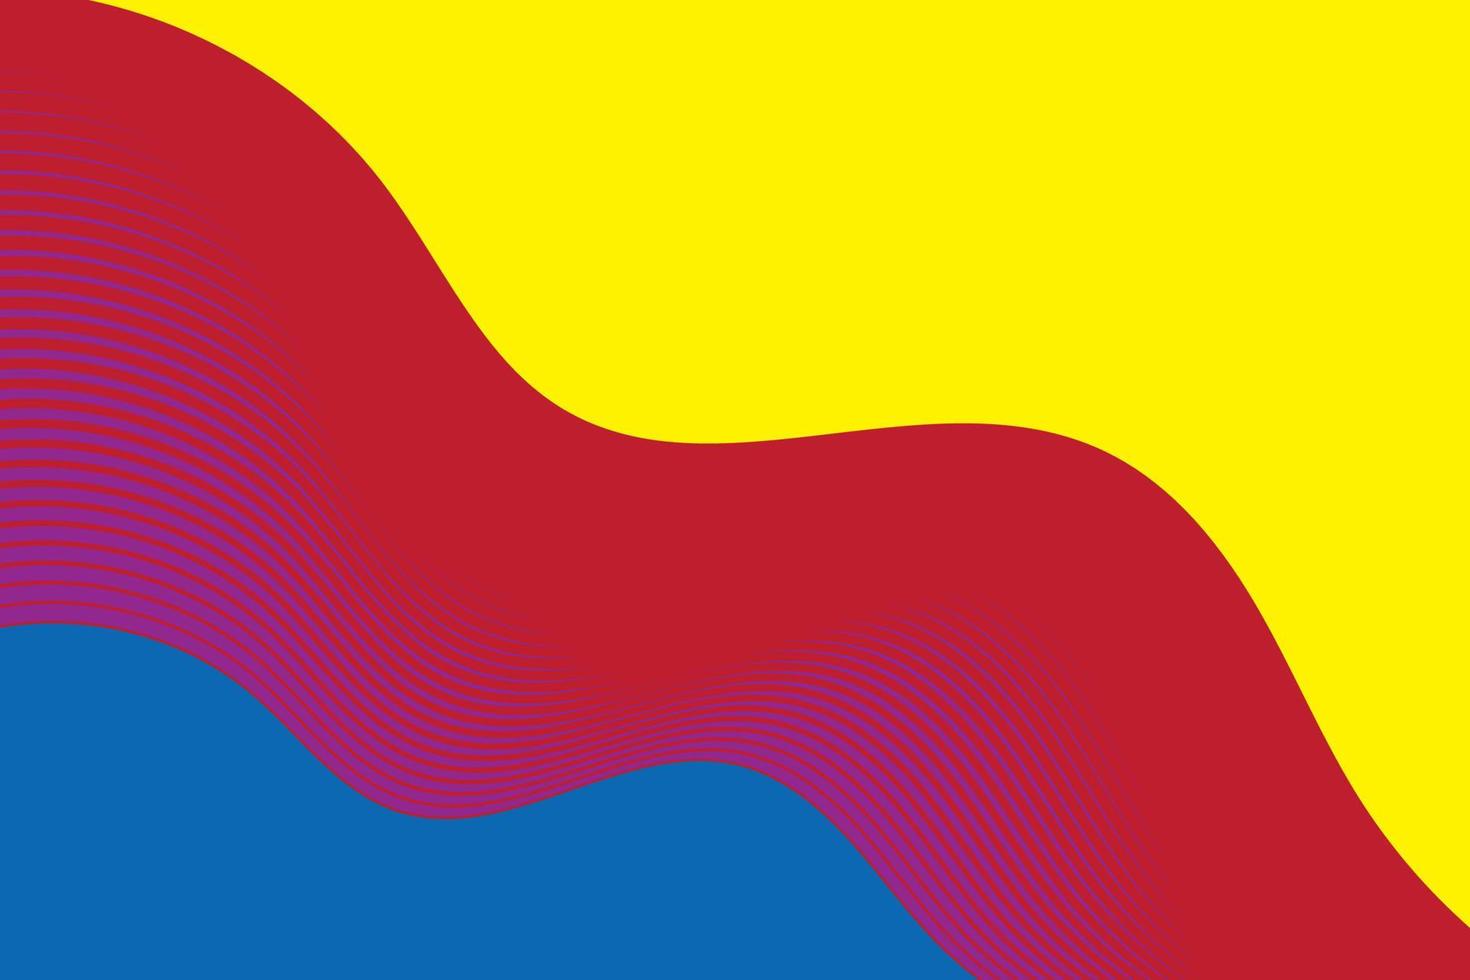 primario colores fondo, azul, rojo, y amarillo en geométrico redondo forma. vector ilustración.